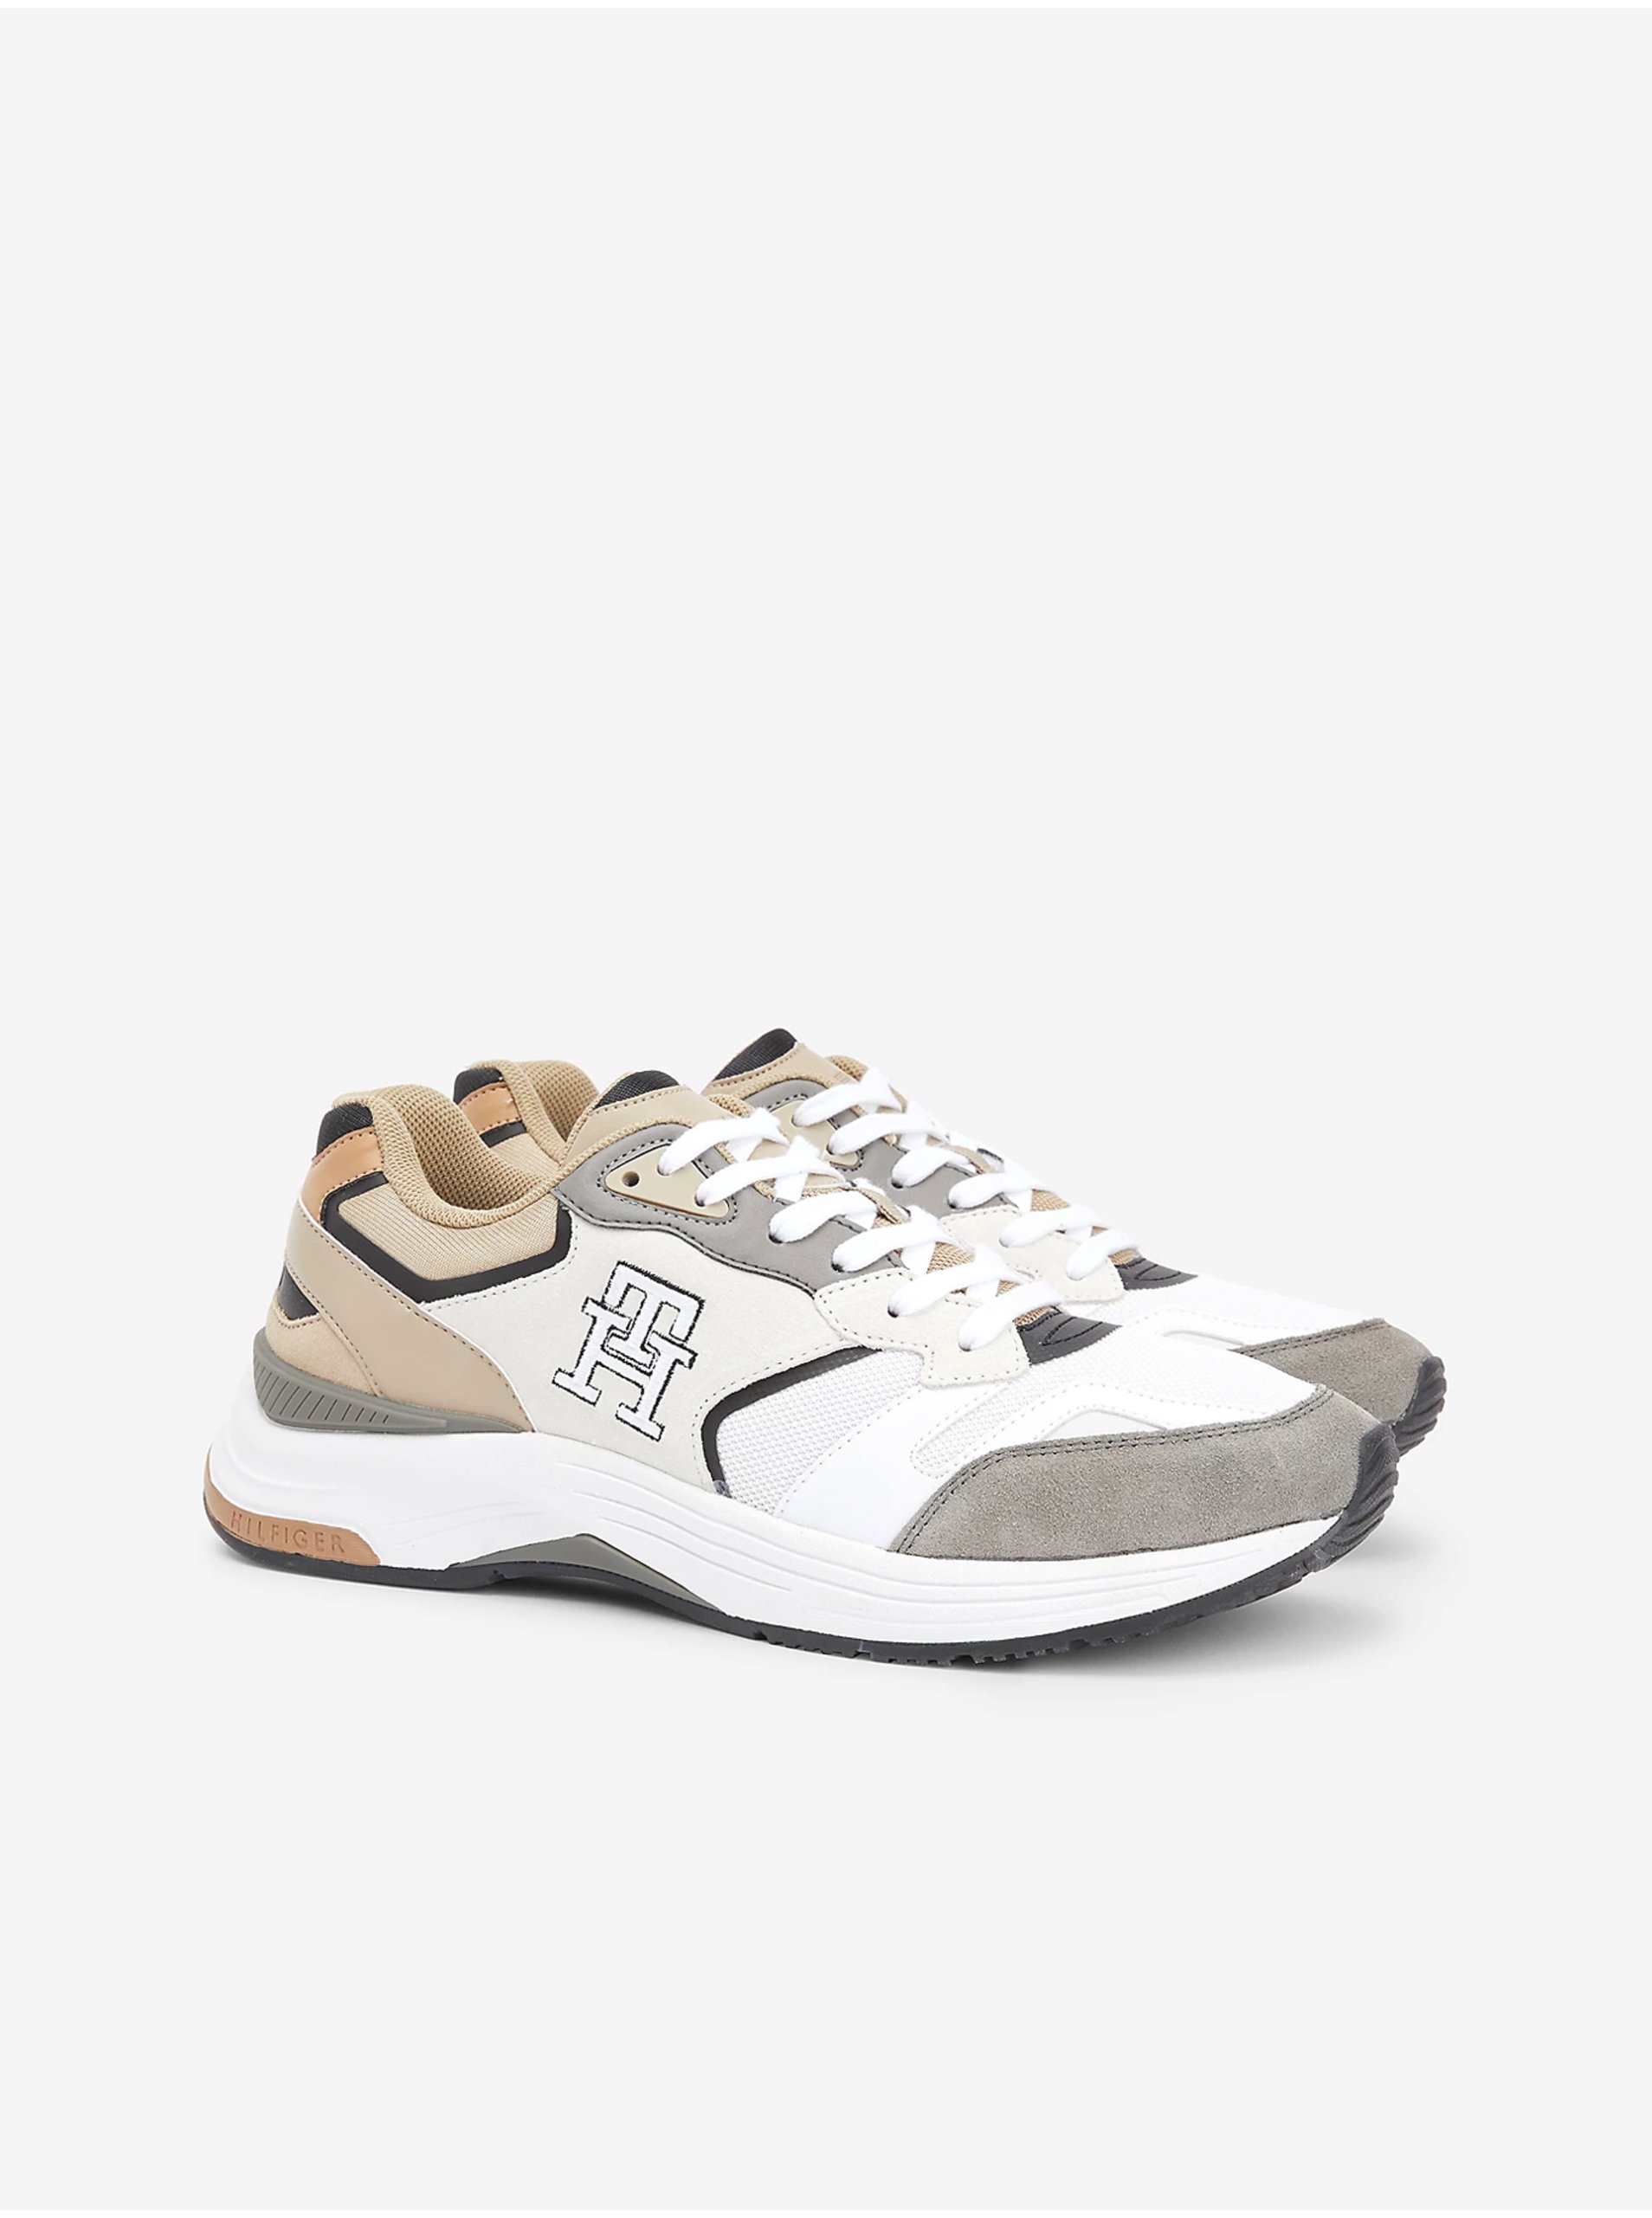 Lacno Béžovo-biele pánske tenisky s koženými detailmi Tommy Hilfiger Modern Prep Sneaker